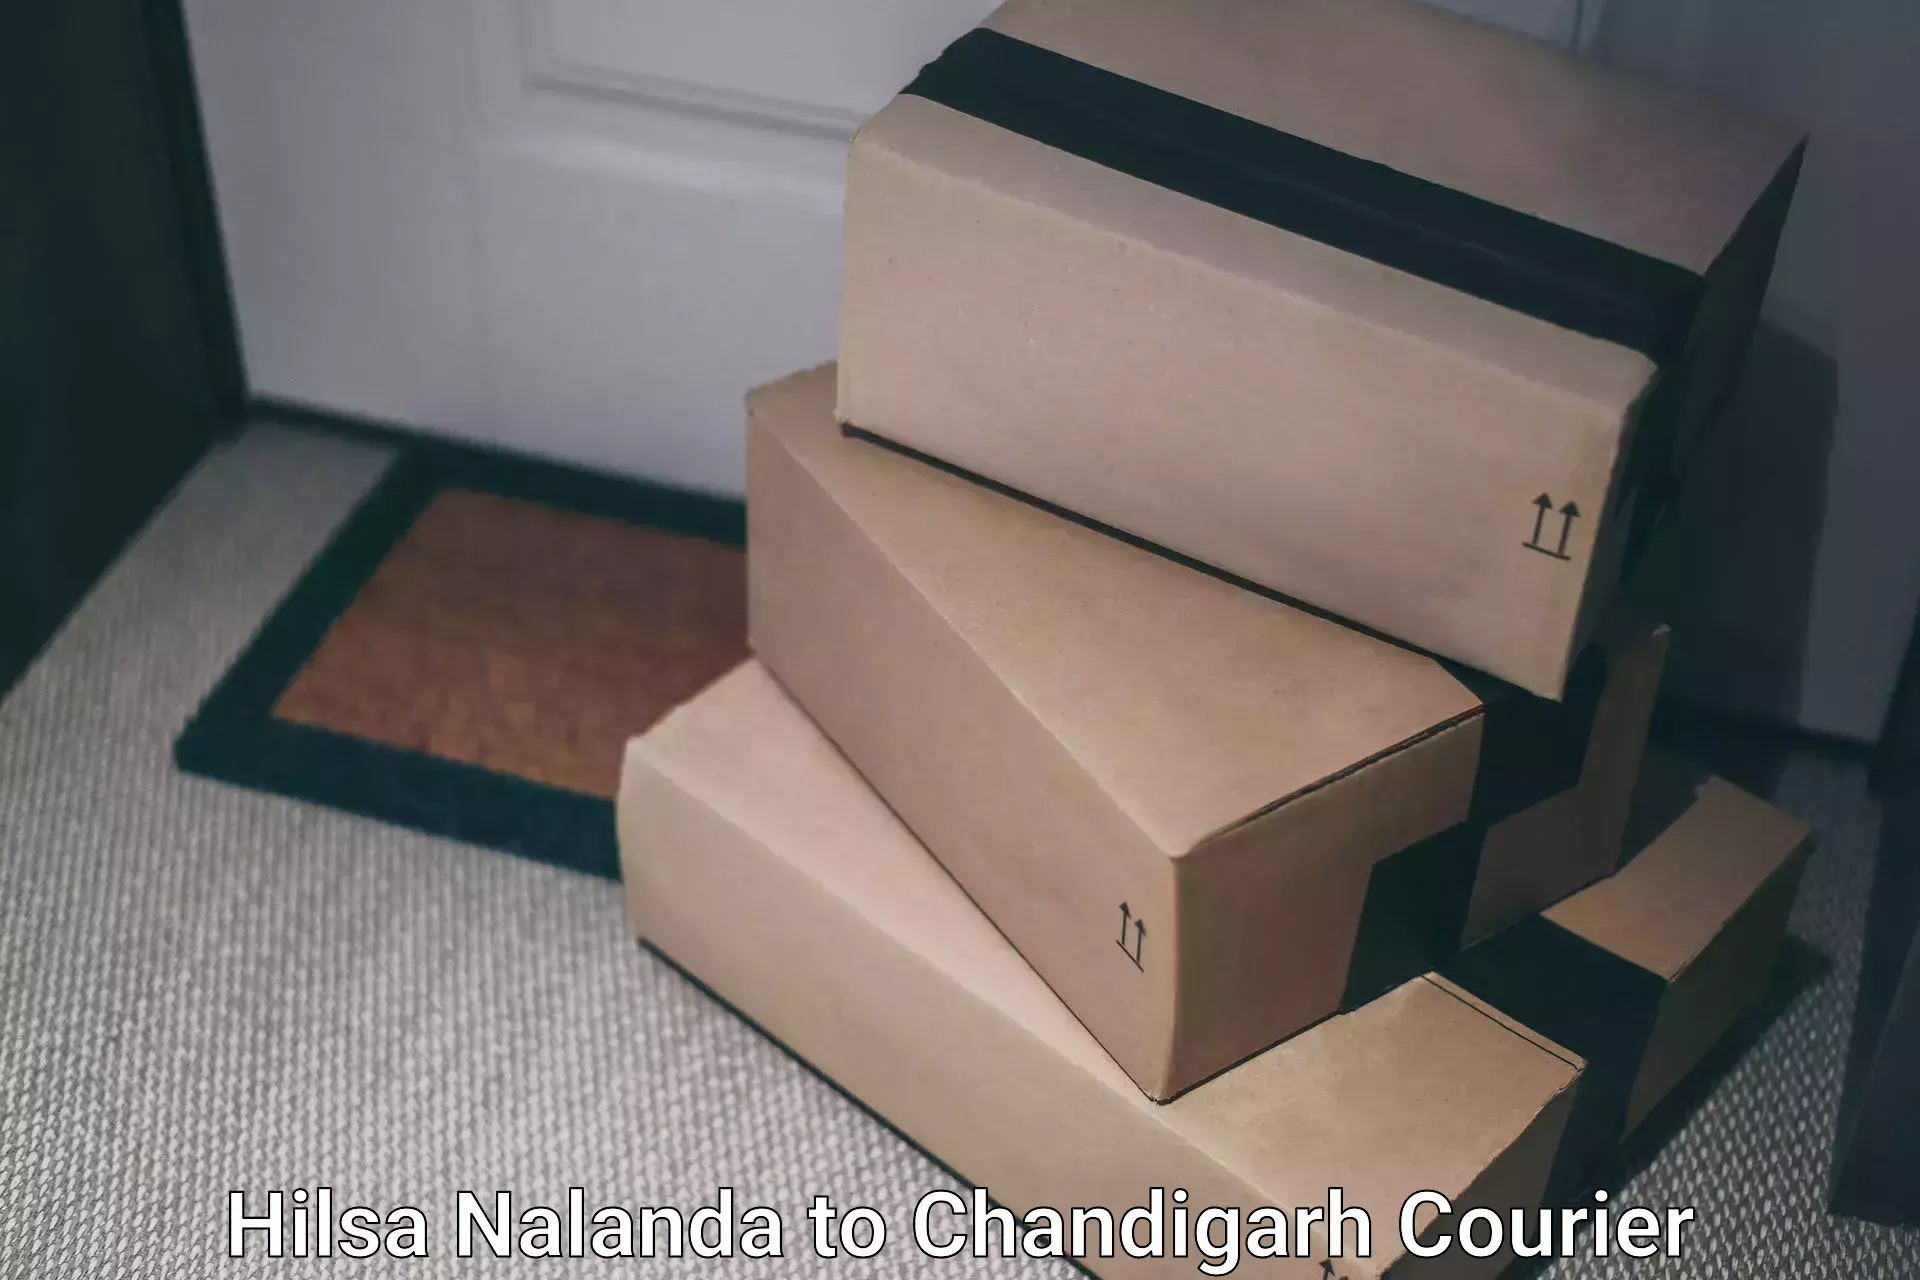 International courier networks Hilsa Nalanda to Panjab University Chandigarh